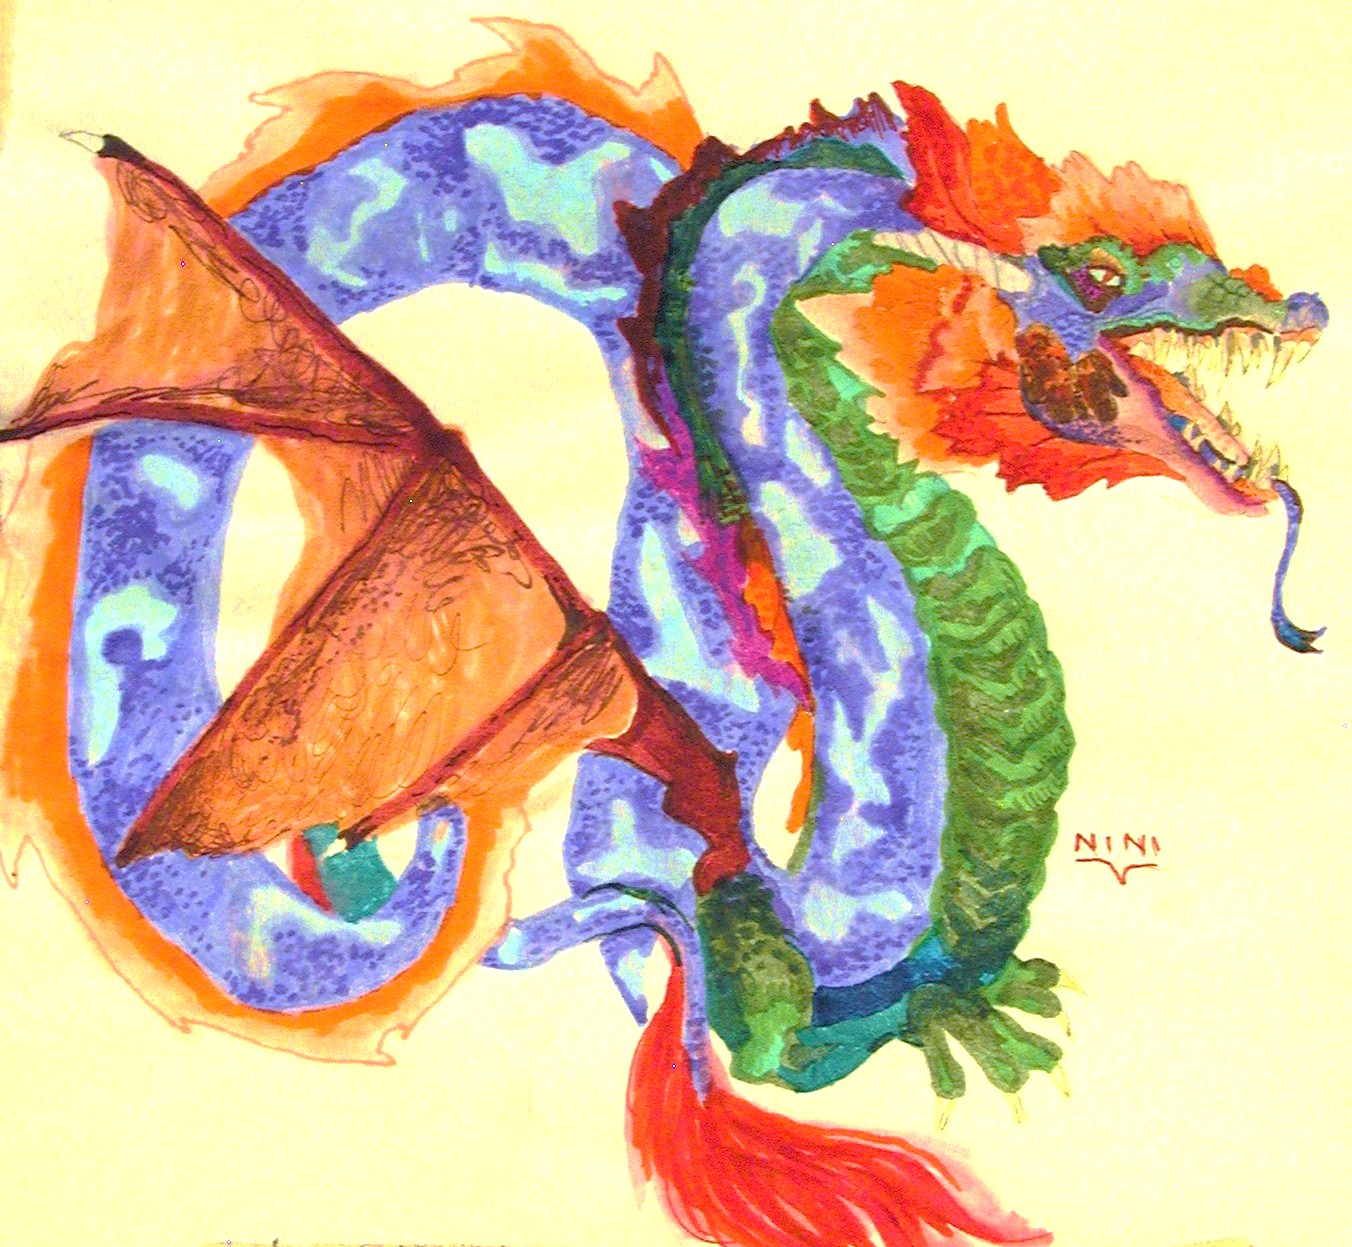 trollfur the dragon by Trollfur